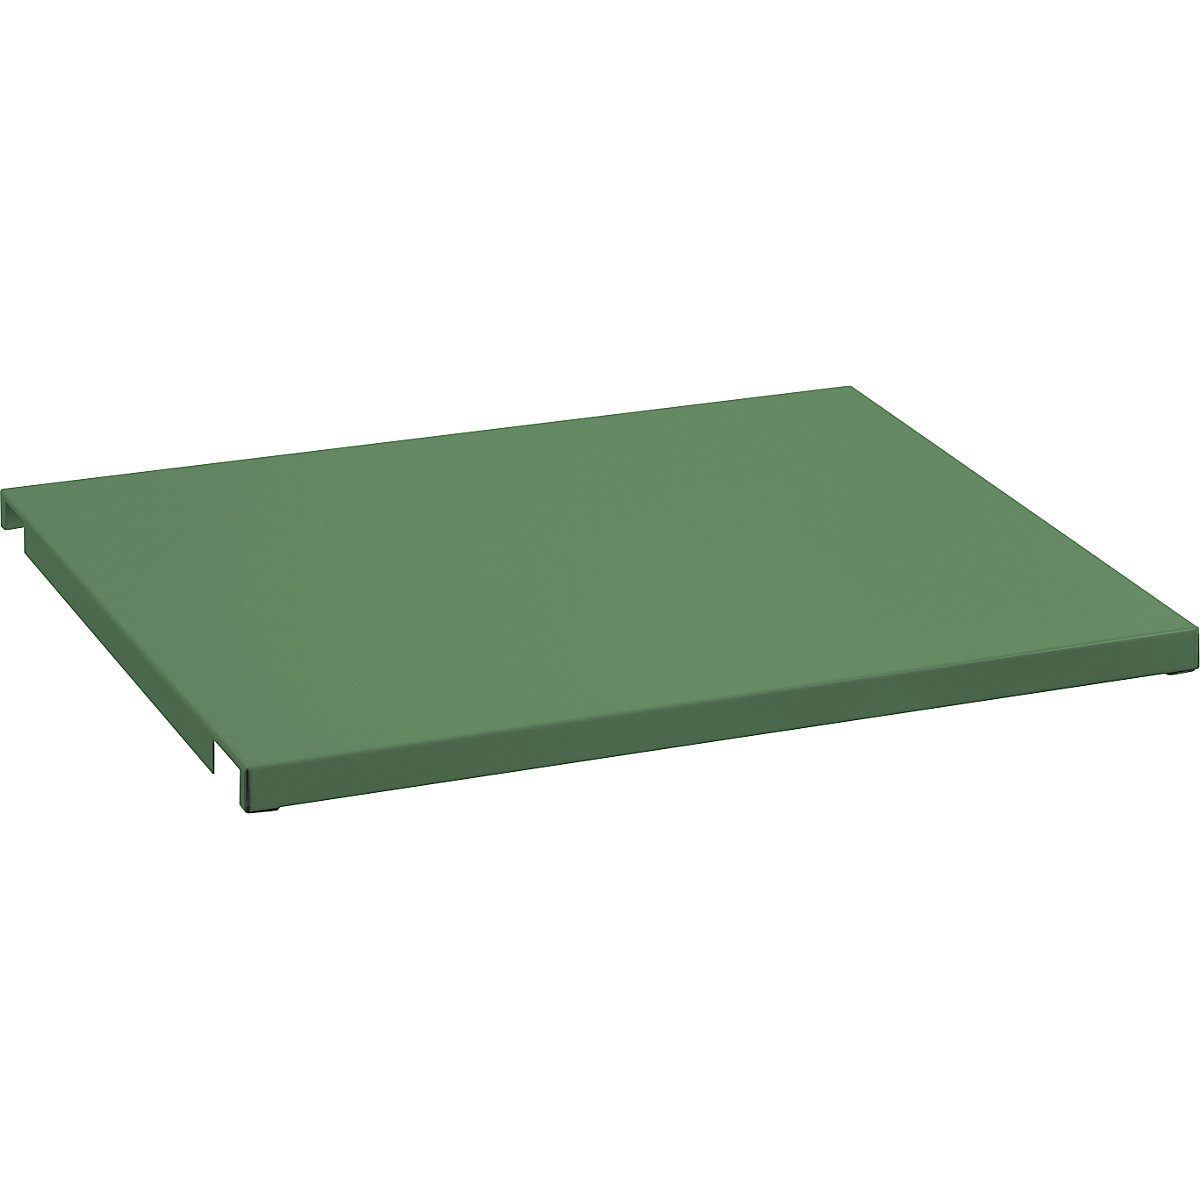 Plechové zakrytí pro pevný rám – LISTA, pro š x h 1290 x 1260 mm, rezedová zelená-3